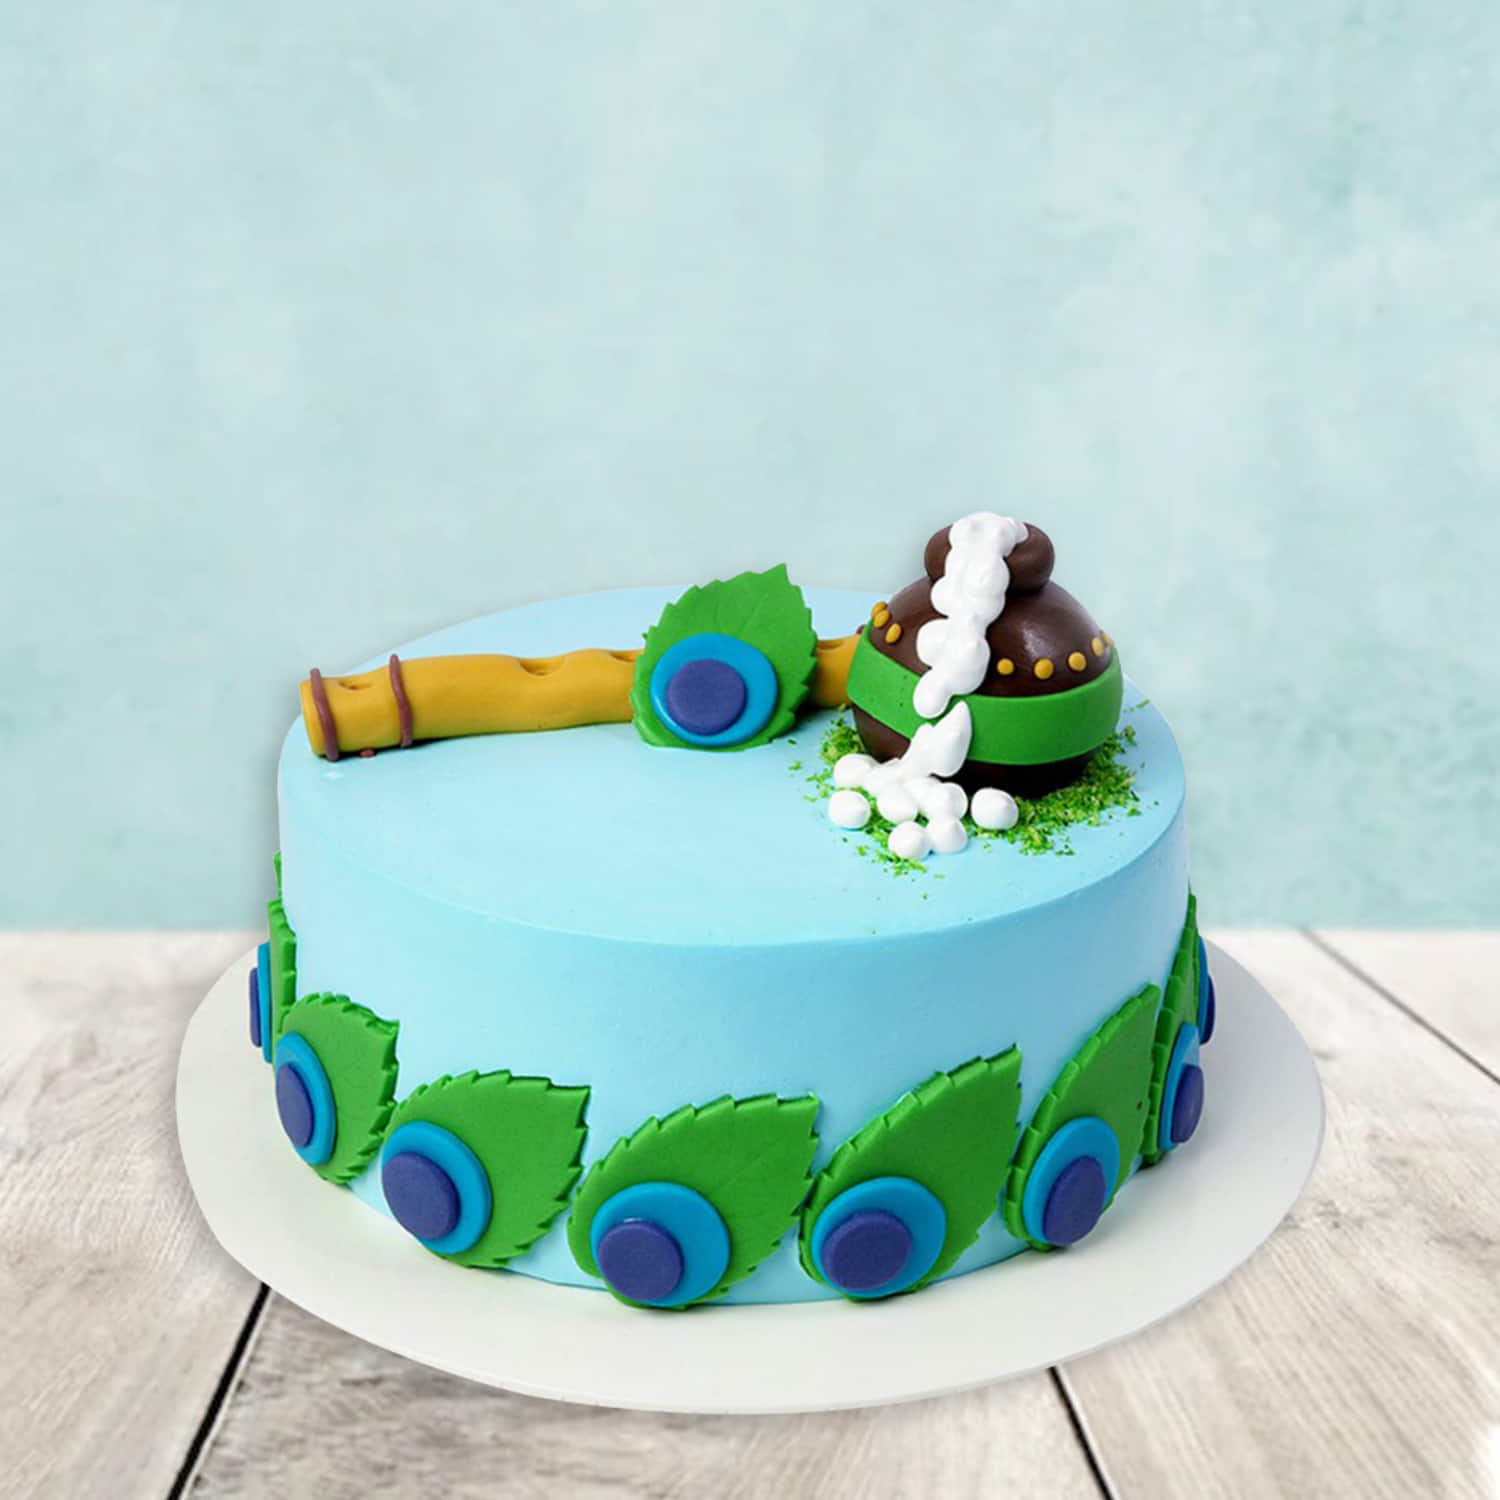 जन्माष्टमी स्पेशल: दही, हंडी और बांसुरी से सजाए कान्हा के लिए केक - best  cake idea for janmashtmi-mobile